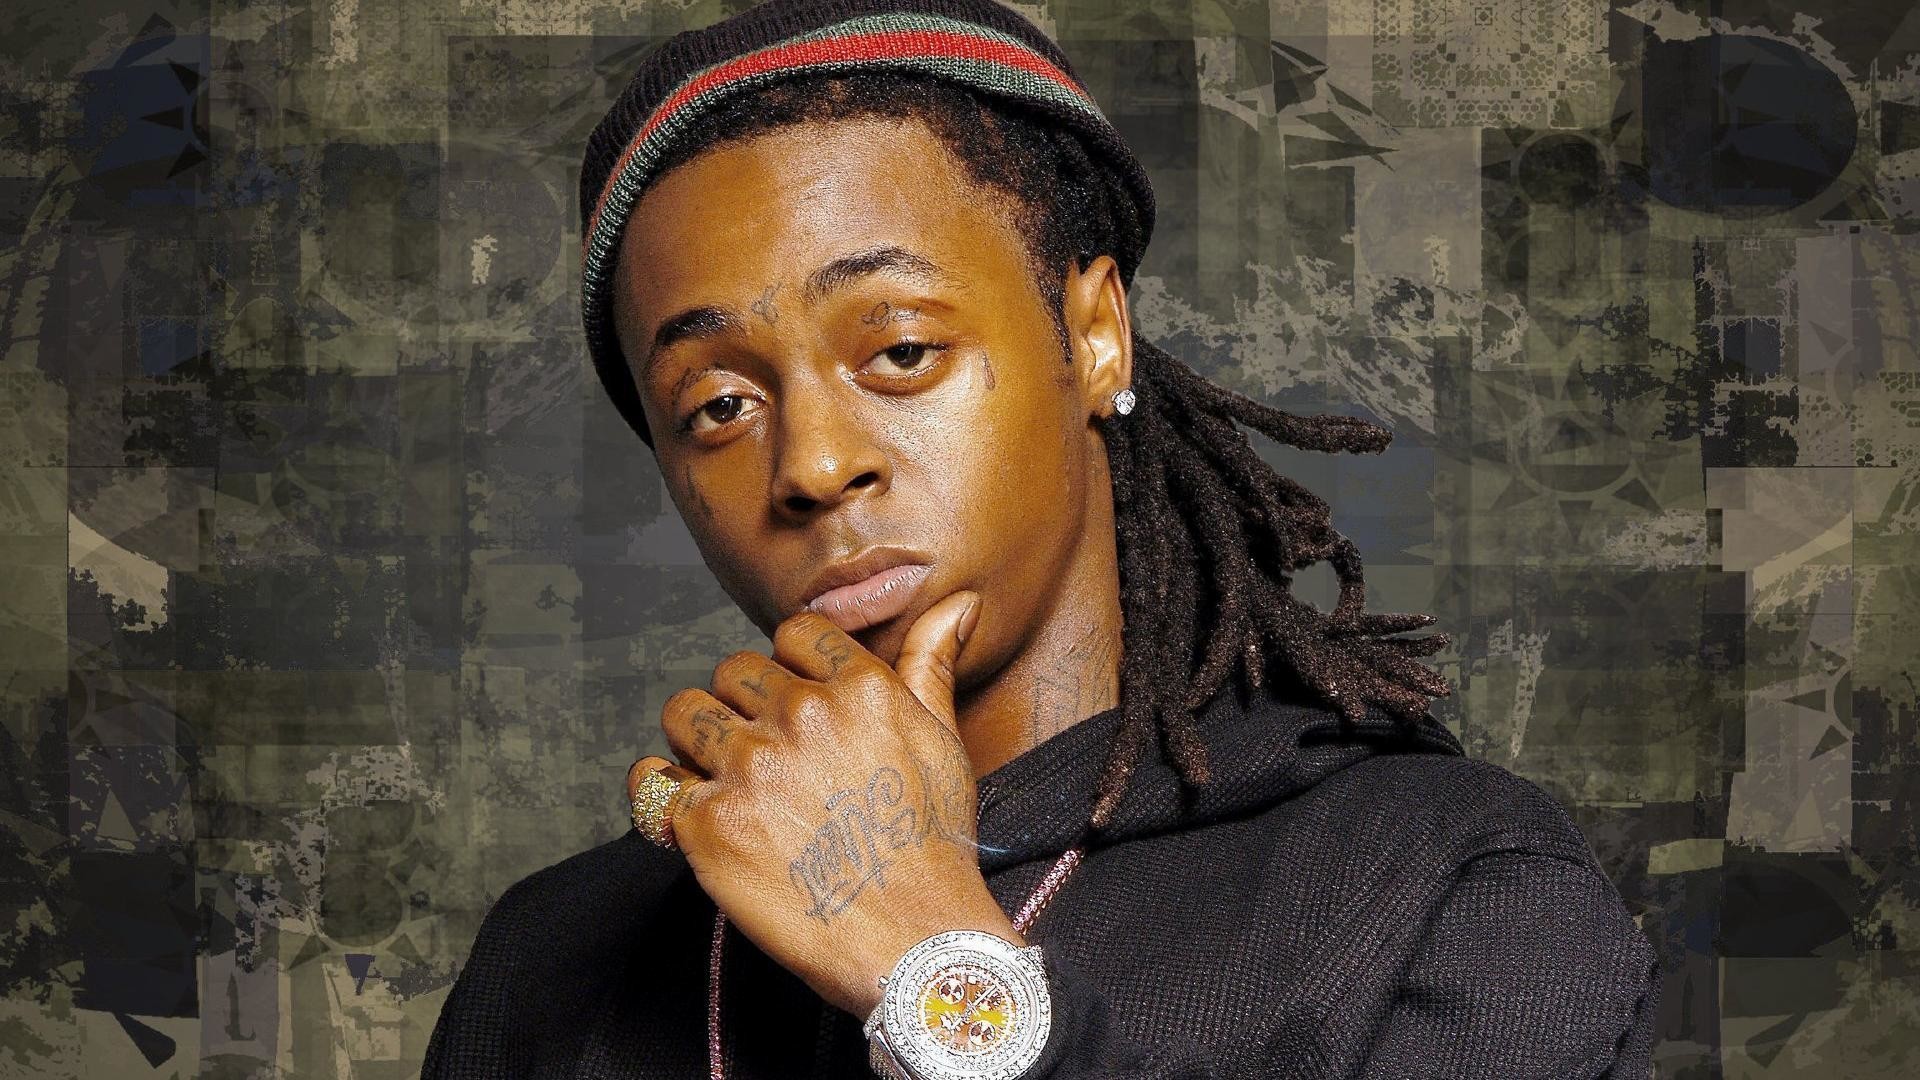 Rap Wallpapers Lil Wayne Hd 1920ã1080 Lil Wayne Wallpapers - Lil Wayne Images Download - HD Wallpaper 